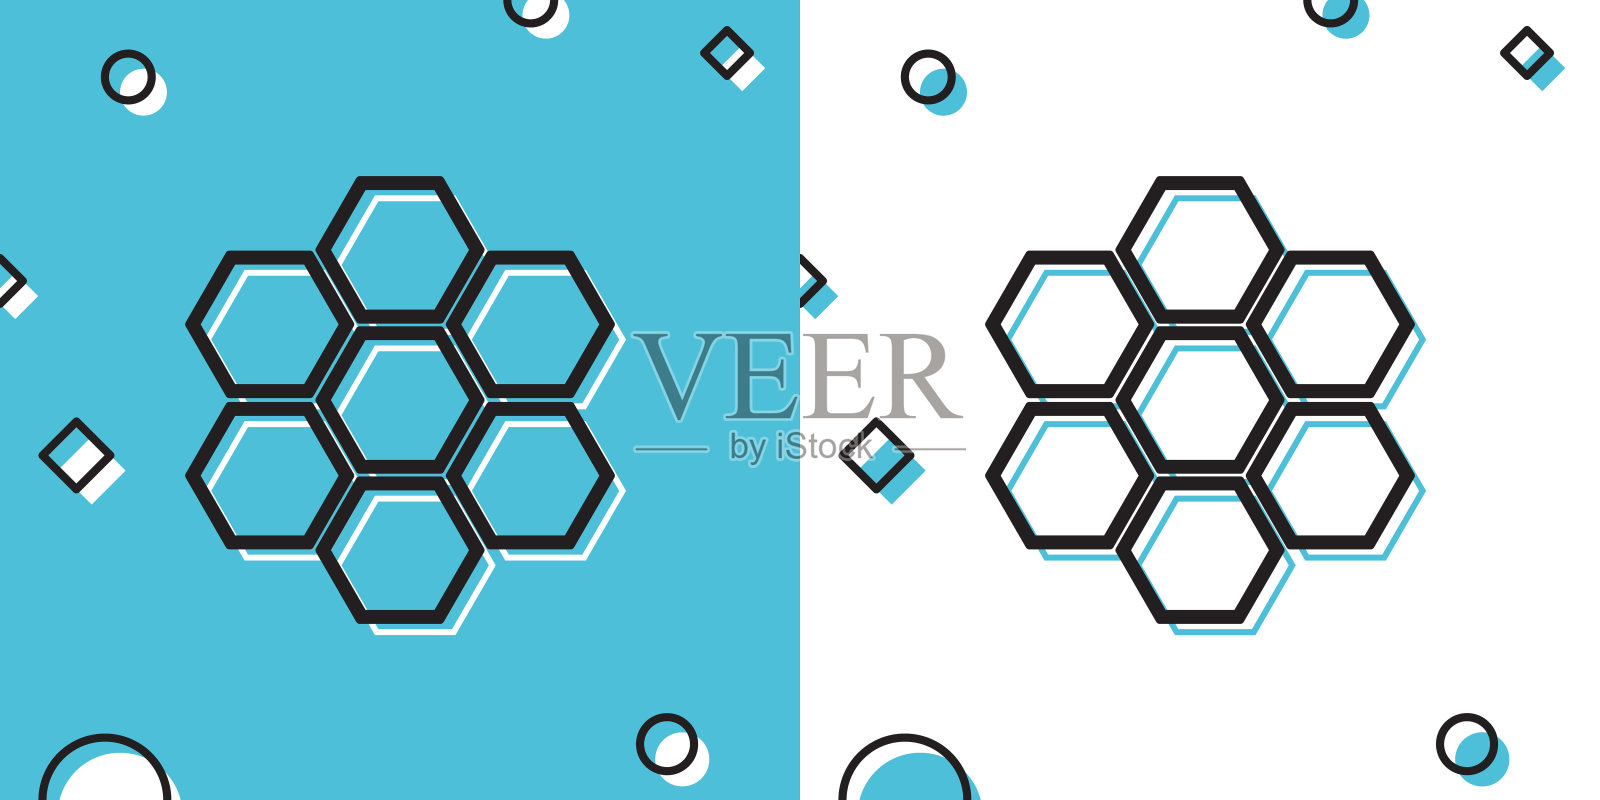 黑色蜂巢标志图标孤立在蓝色和白色的背景。蜂蜜细胞的象征。甜蜜的天然食品。随机动态形状。矢量图插画图片素材